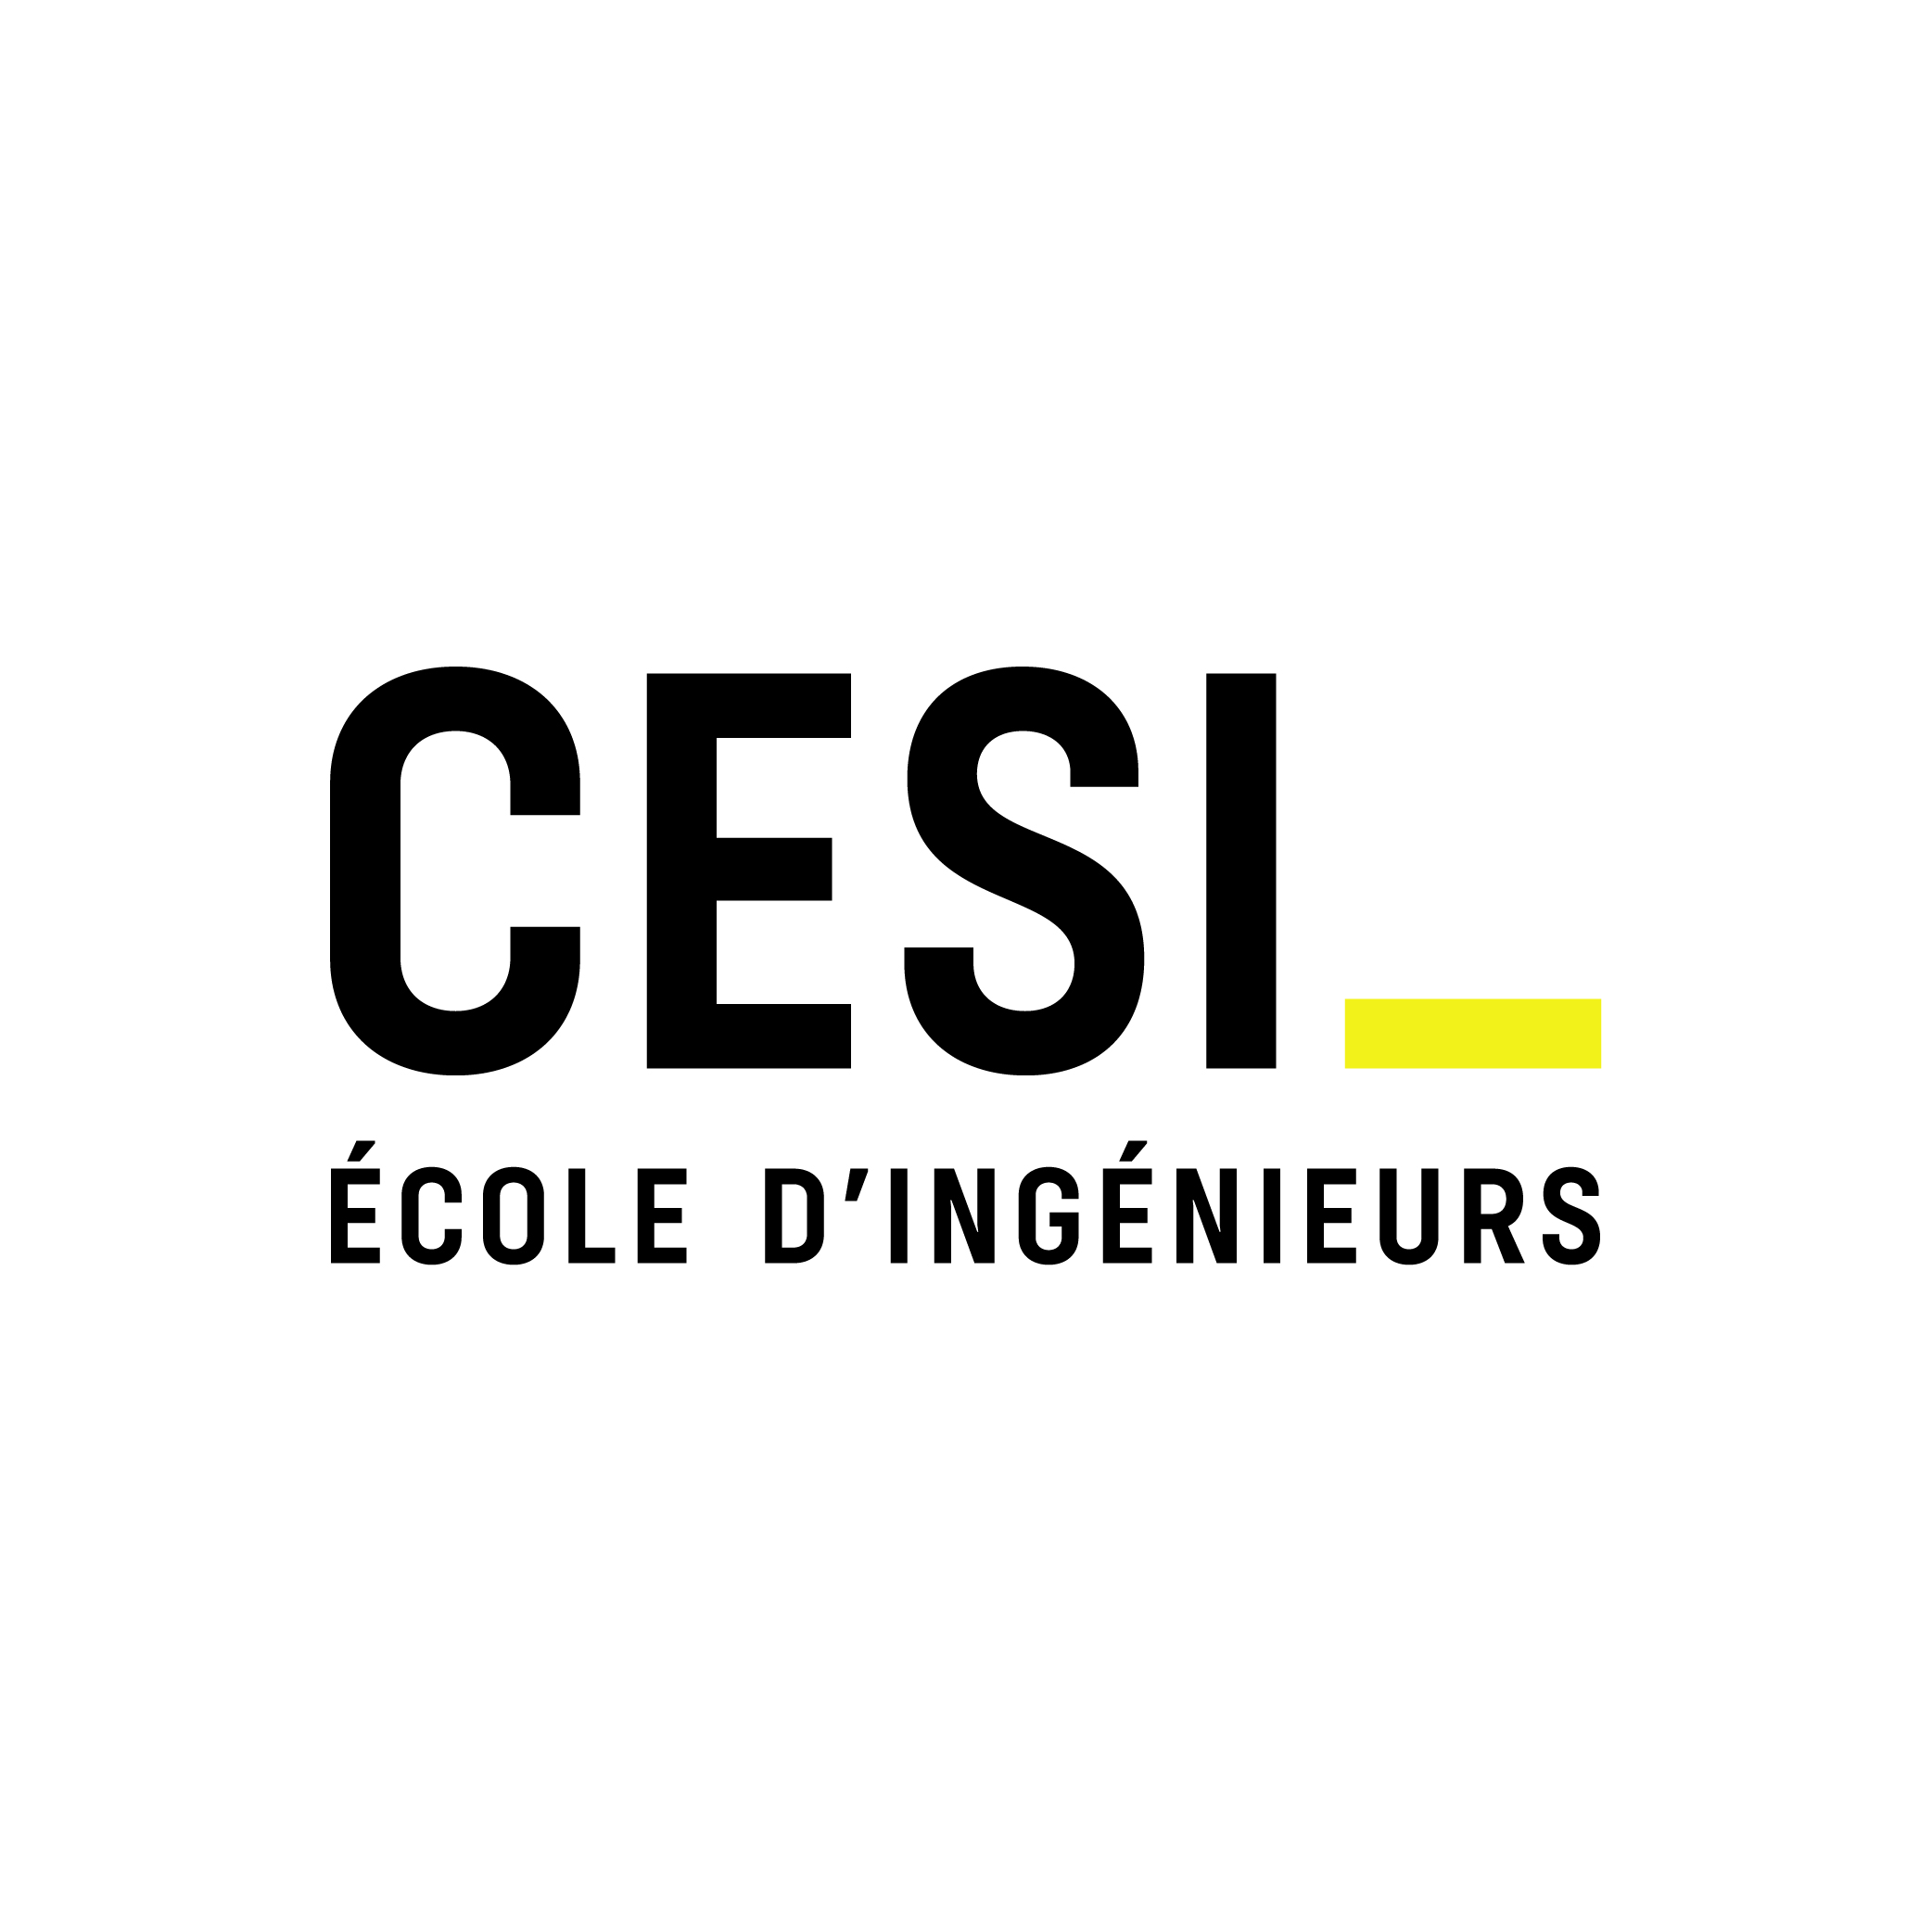 Ecole d'Ingénieurs CESI